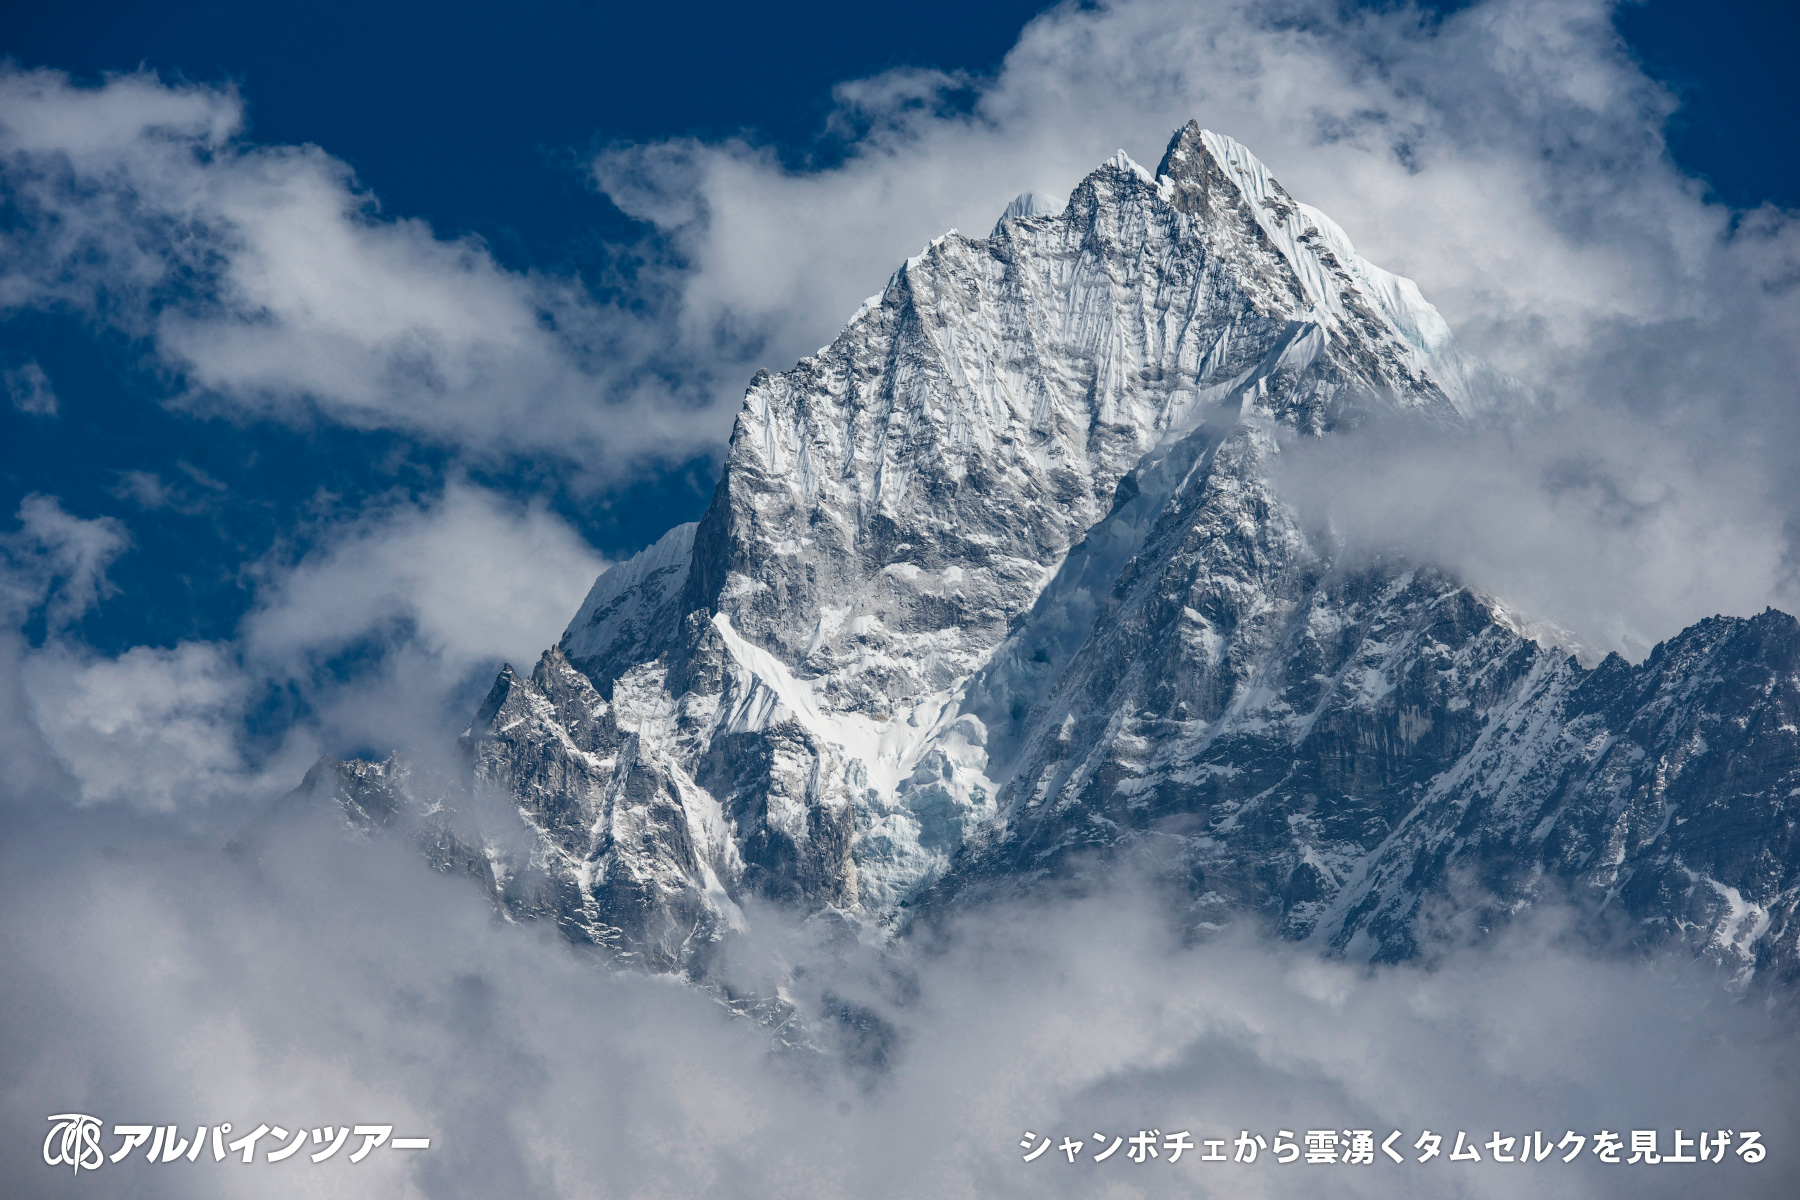 【今日の名峰】 タムセルク（6,623m）